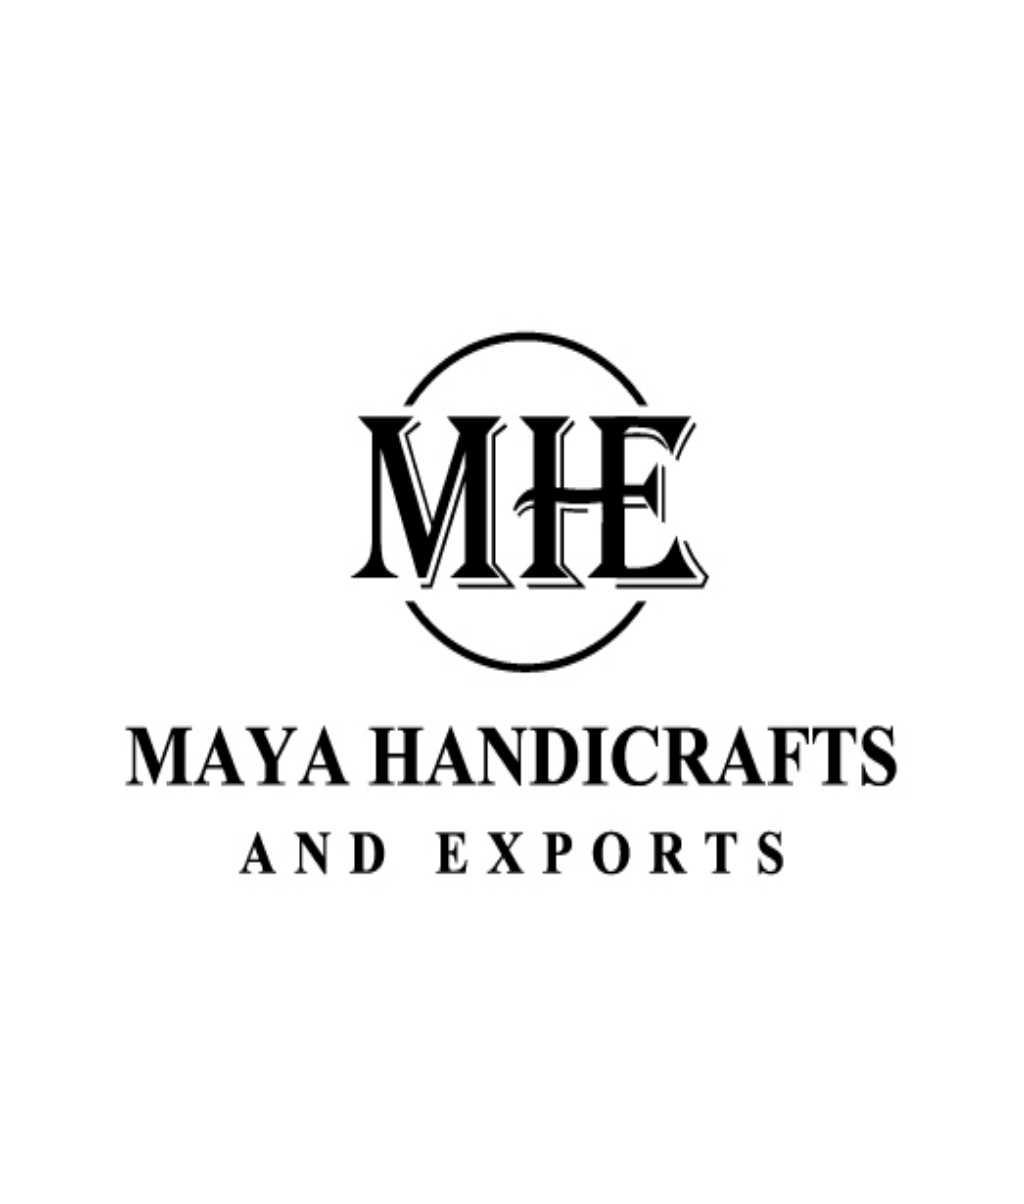 Maya Handicrafts and Exports